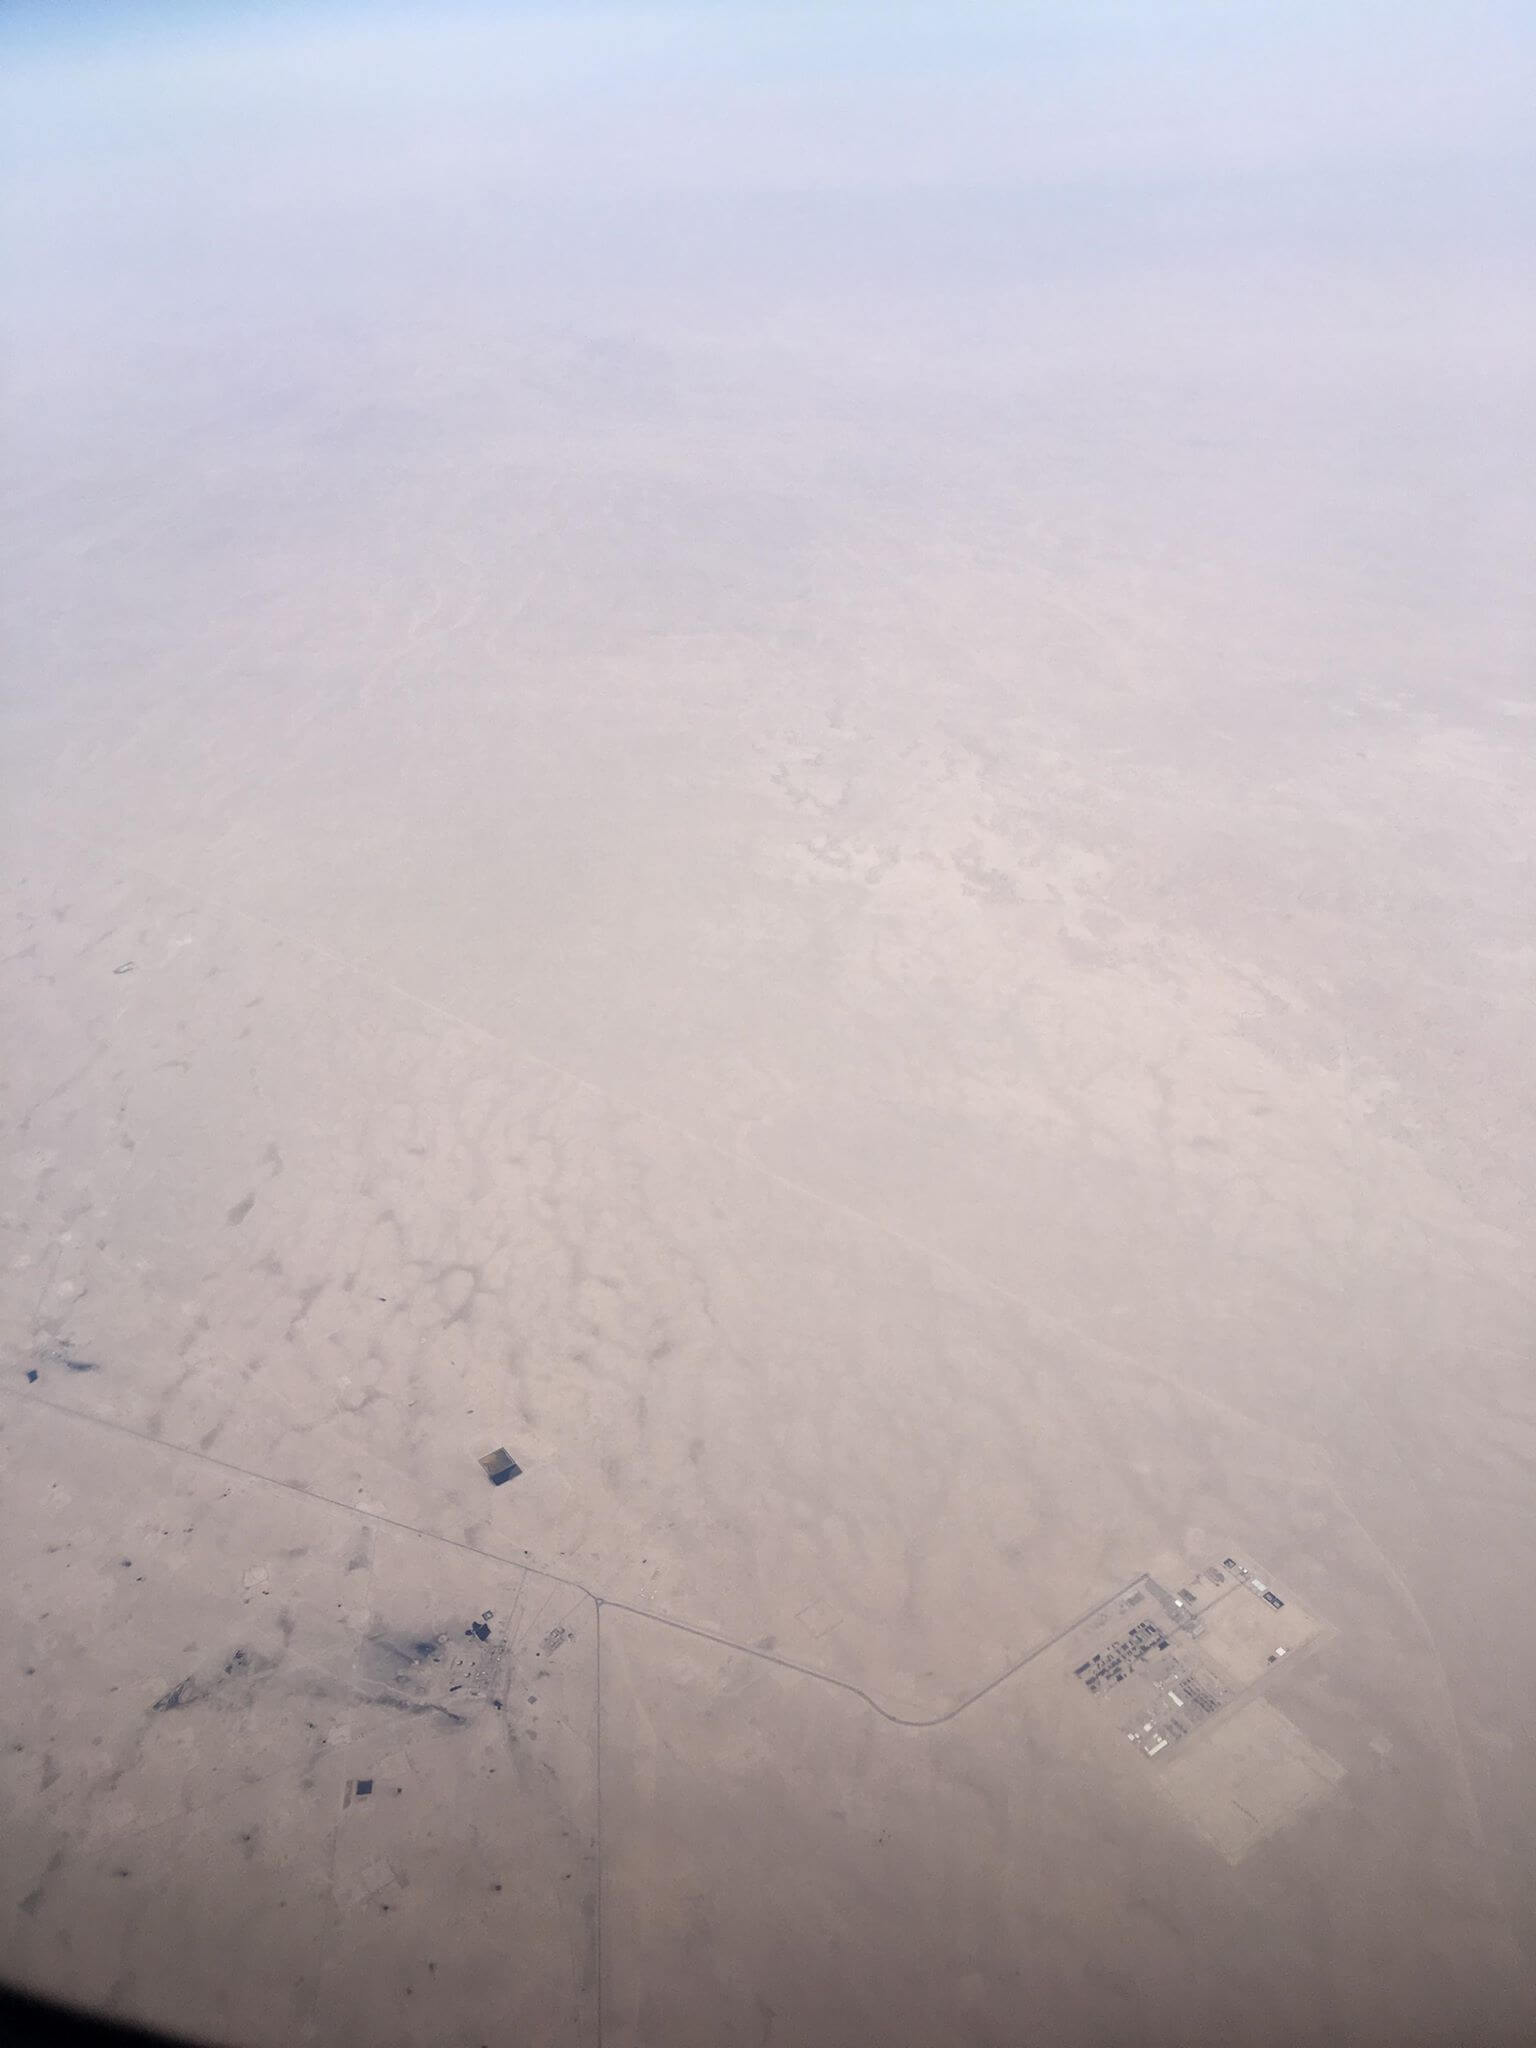 Ексклюзив: бойова територія Іраку очима закарпатця (ВІДЕО з борту літака)